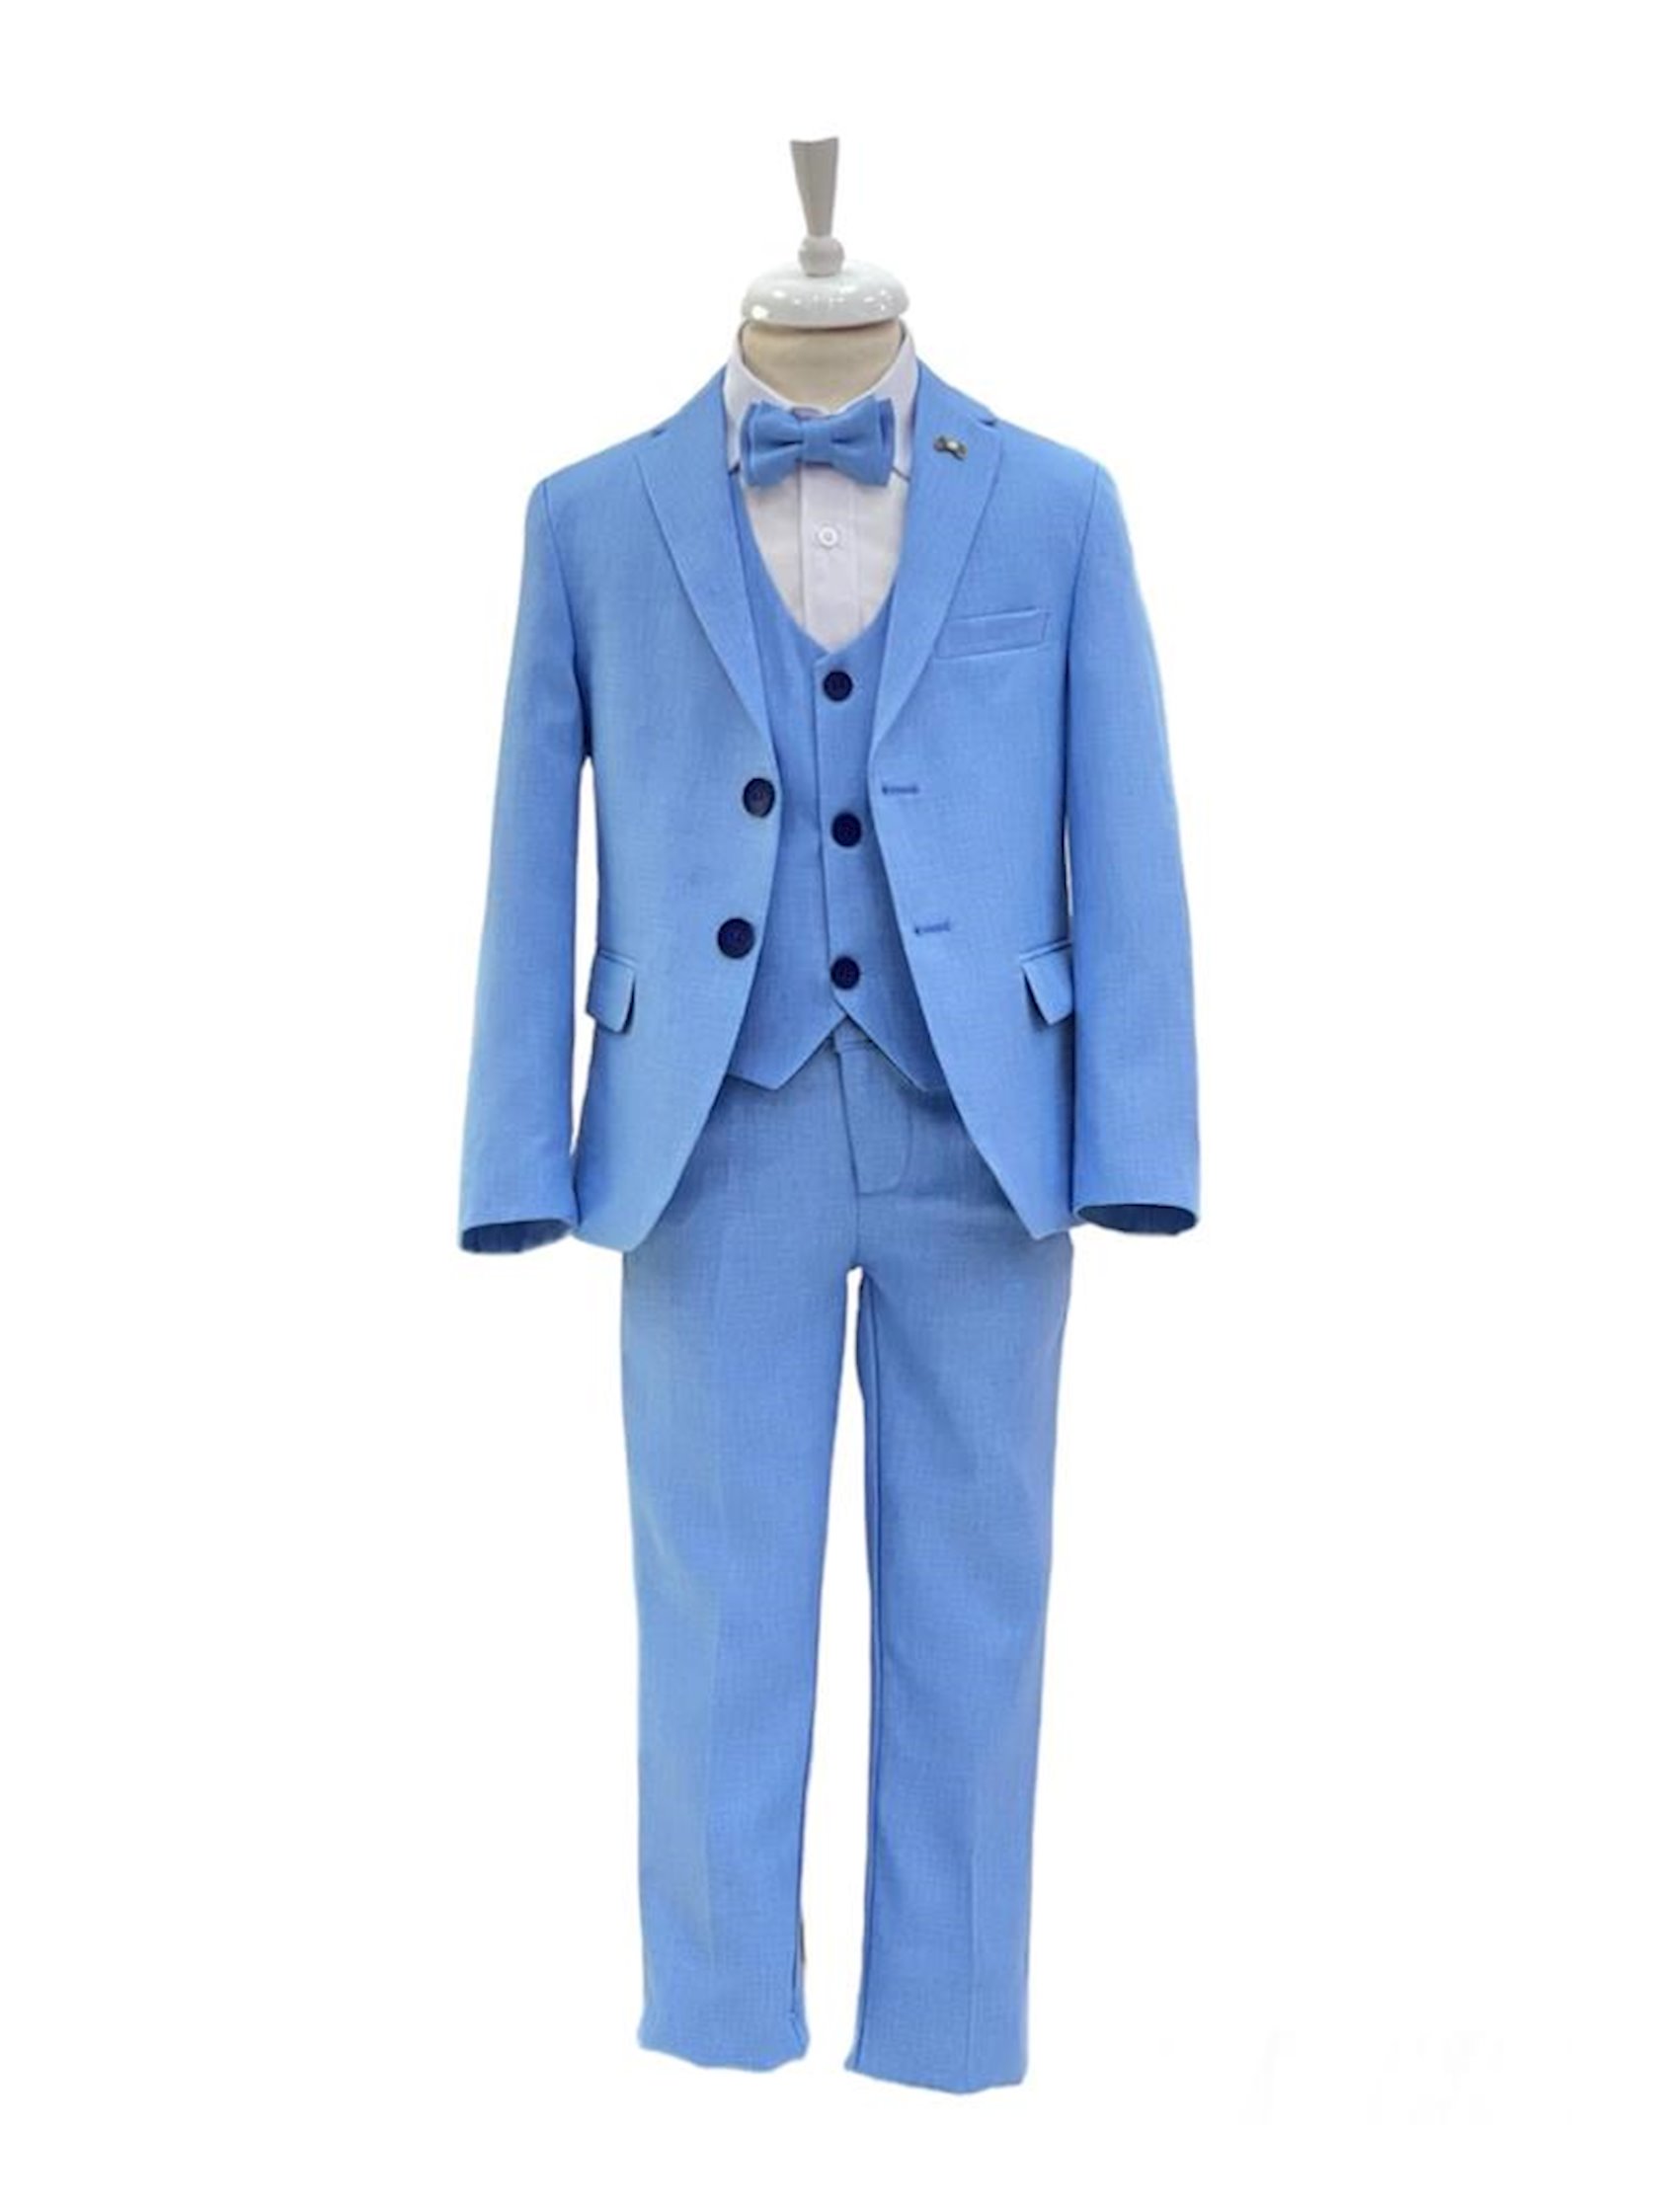 Костюм с брюками для мальчиков Minaga SSPPUM_1626, голубой,  полиэстер/хлопок, размер 8 лет - купить в Баку. Цена, обзор, отзывы, продажа